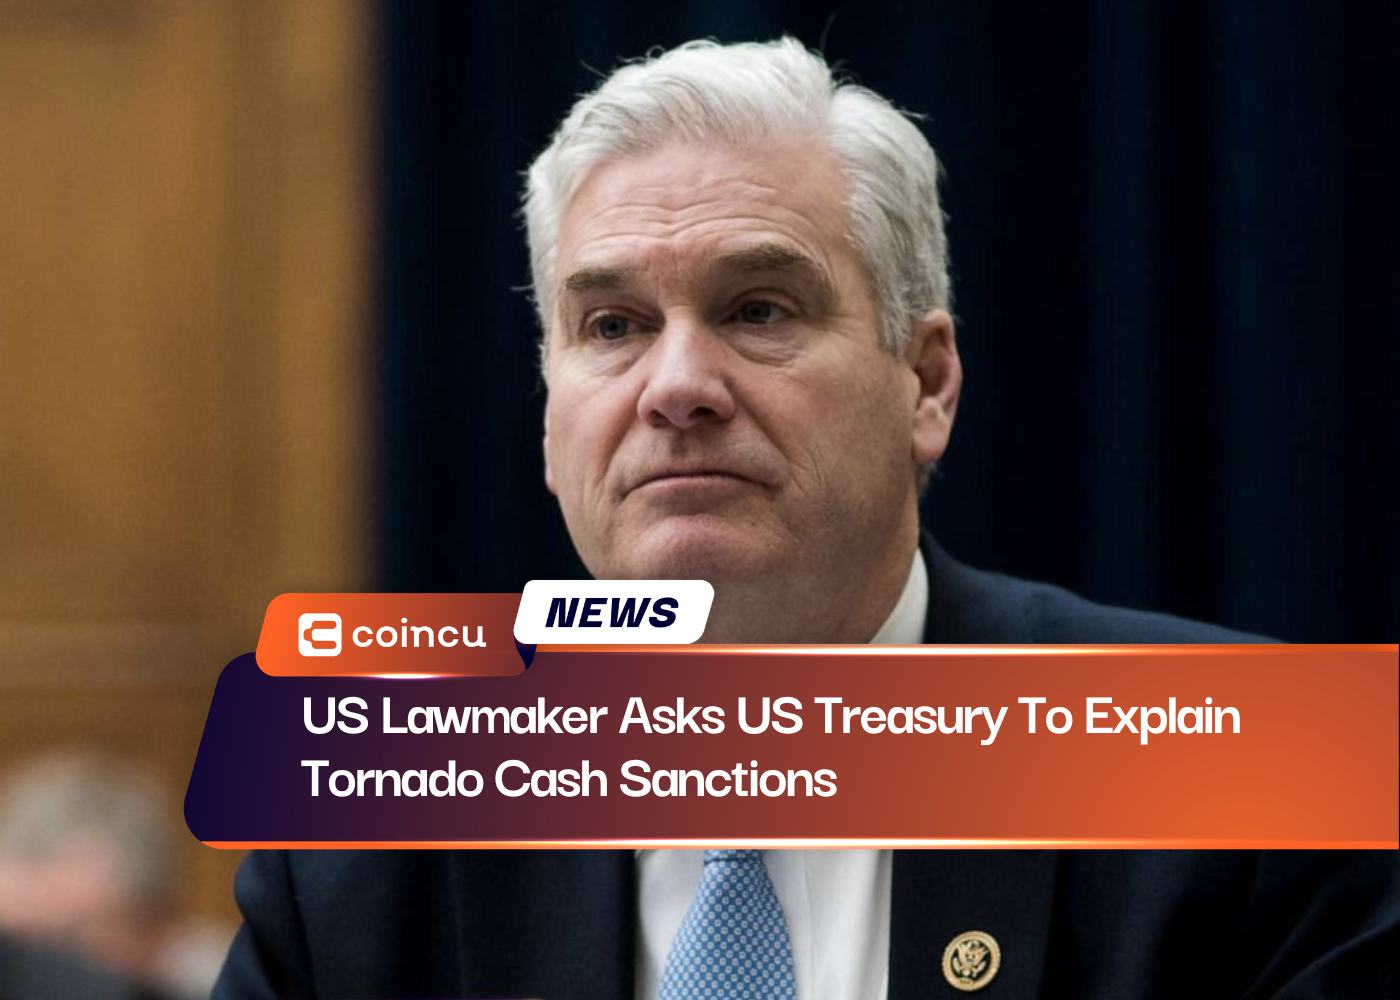 US Lawmaker Asks US Treasury To Explain Tornado Cash Sanctions